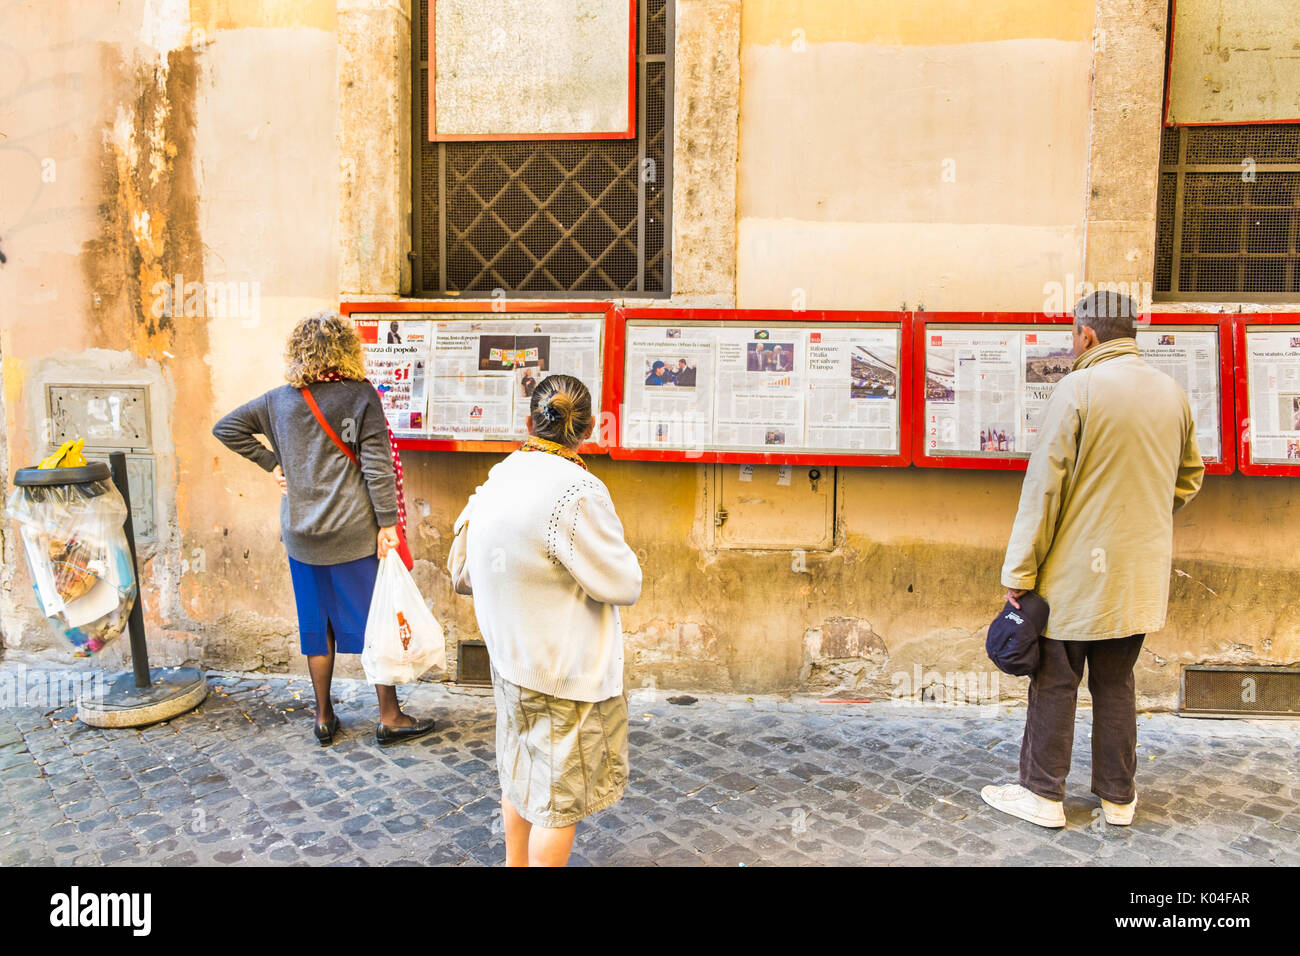 Personas leyendo l'Unita, prensa diaria en la pantalla fuera de la sección pci local en el centro histórico de la ciudad de Roma. Foto de stock